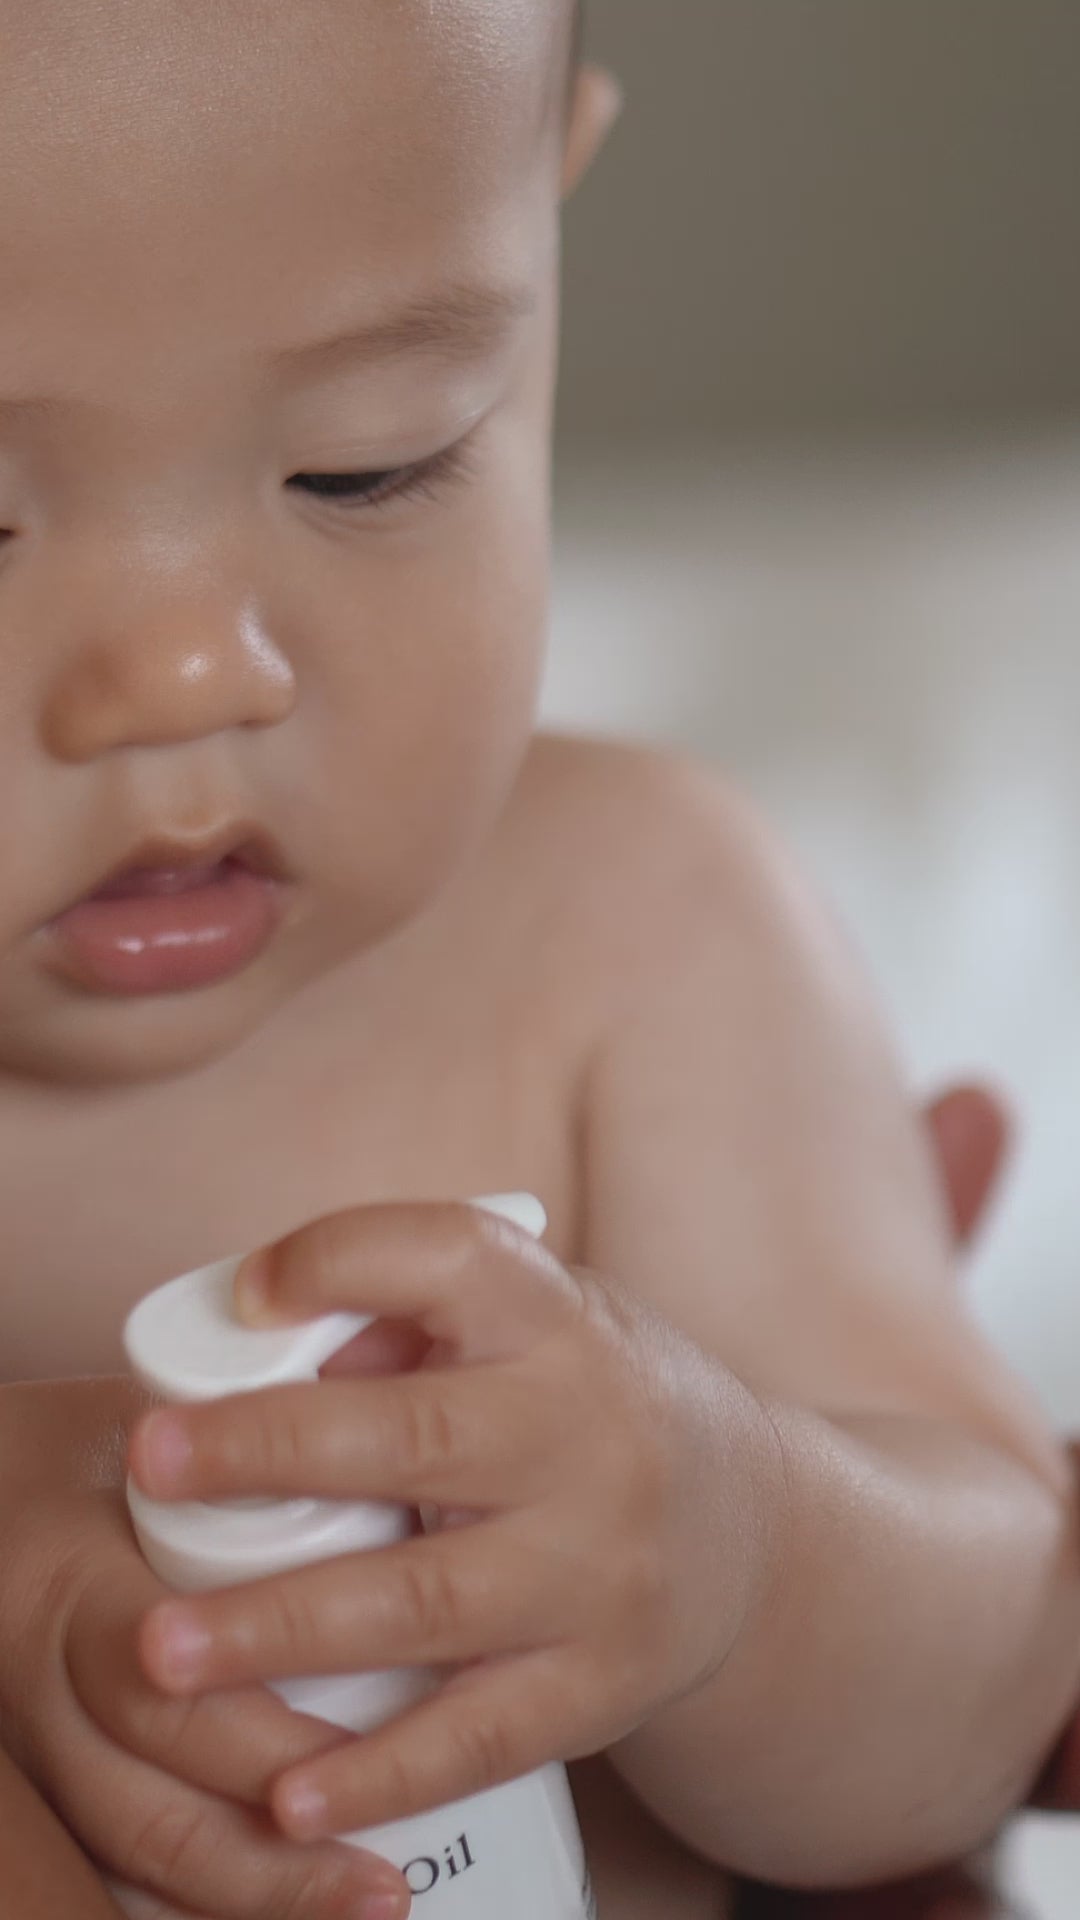 Visar användning av babyolja på ett barn